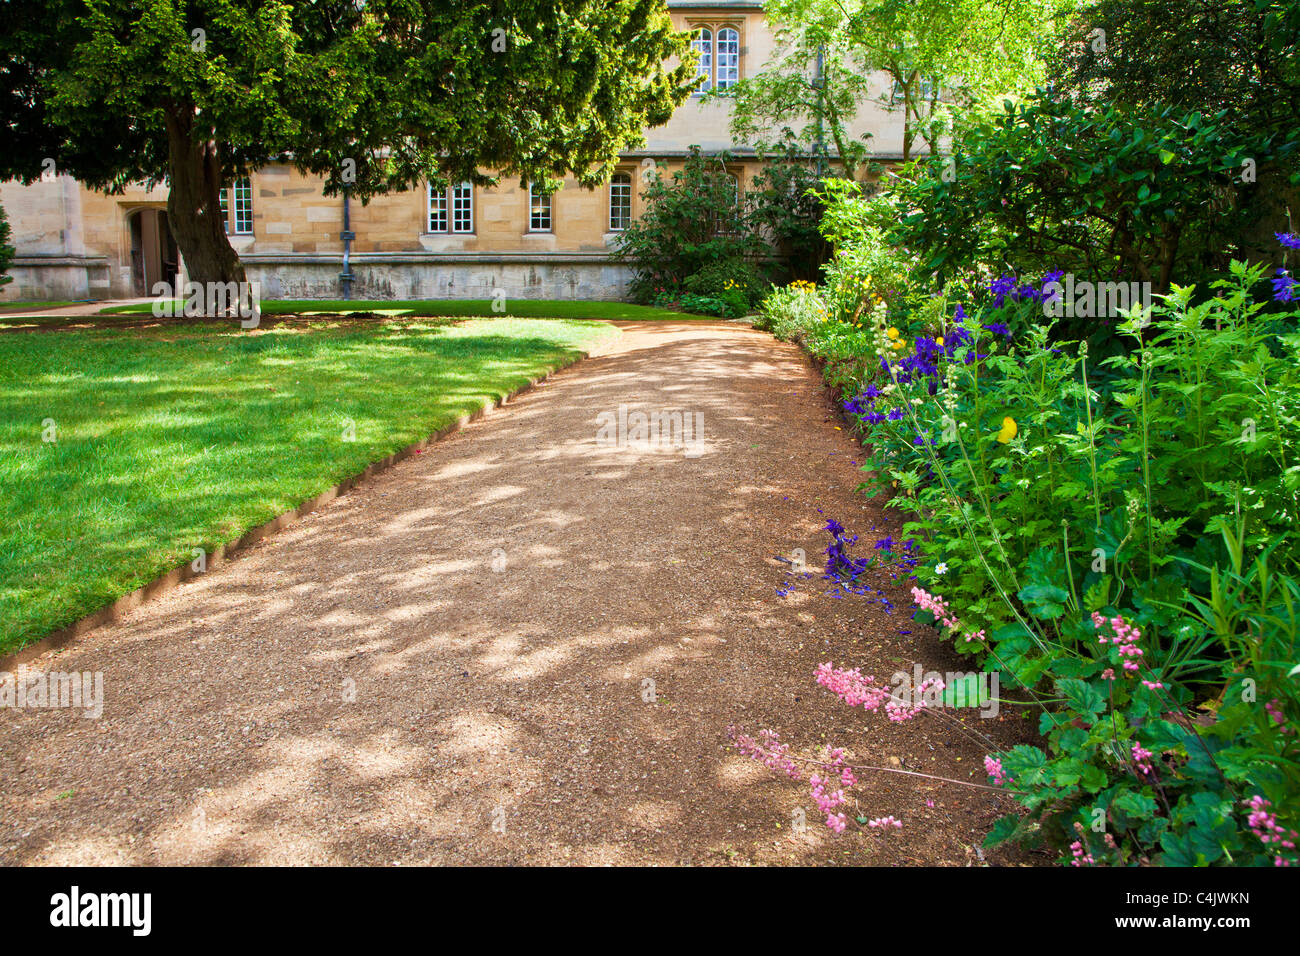 Der Garten am Wadham College, Universität Oxford, Oxfordshire, England, UK, Großbritannien Stockfoto